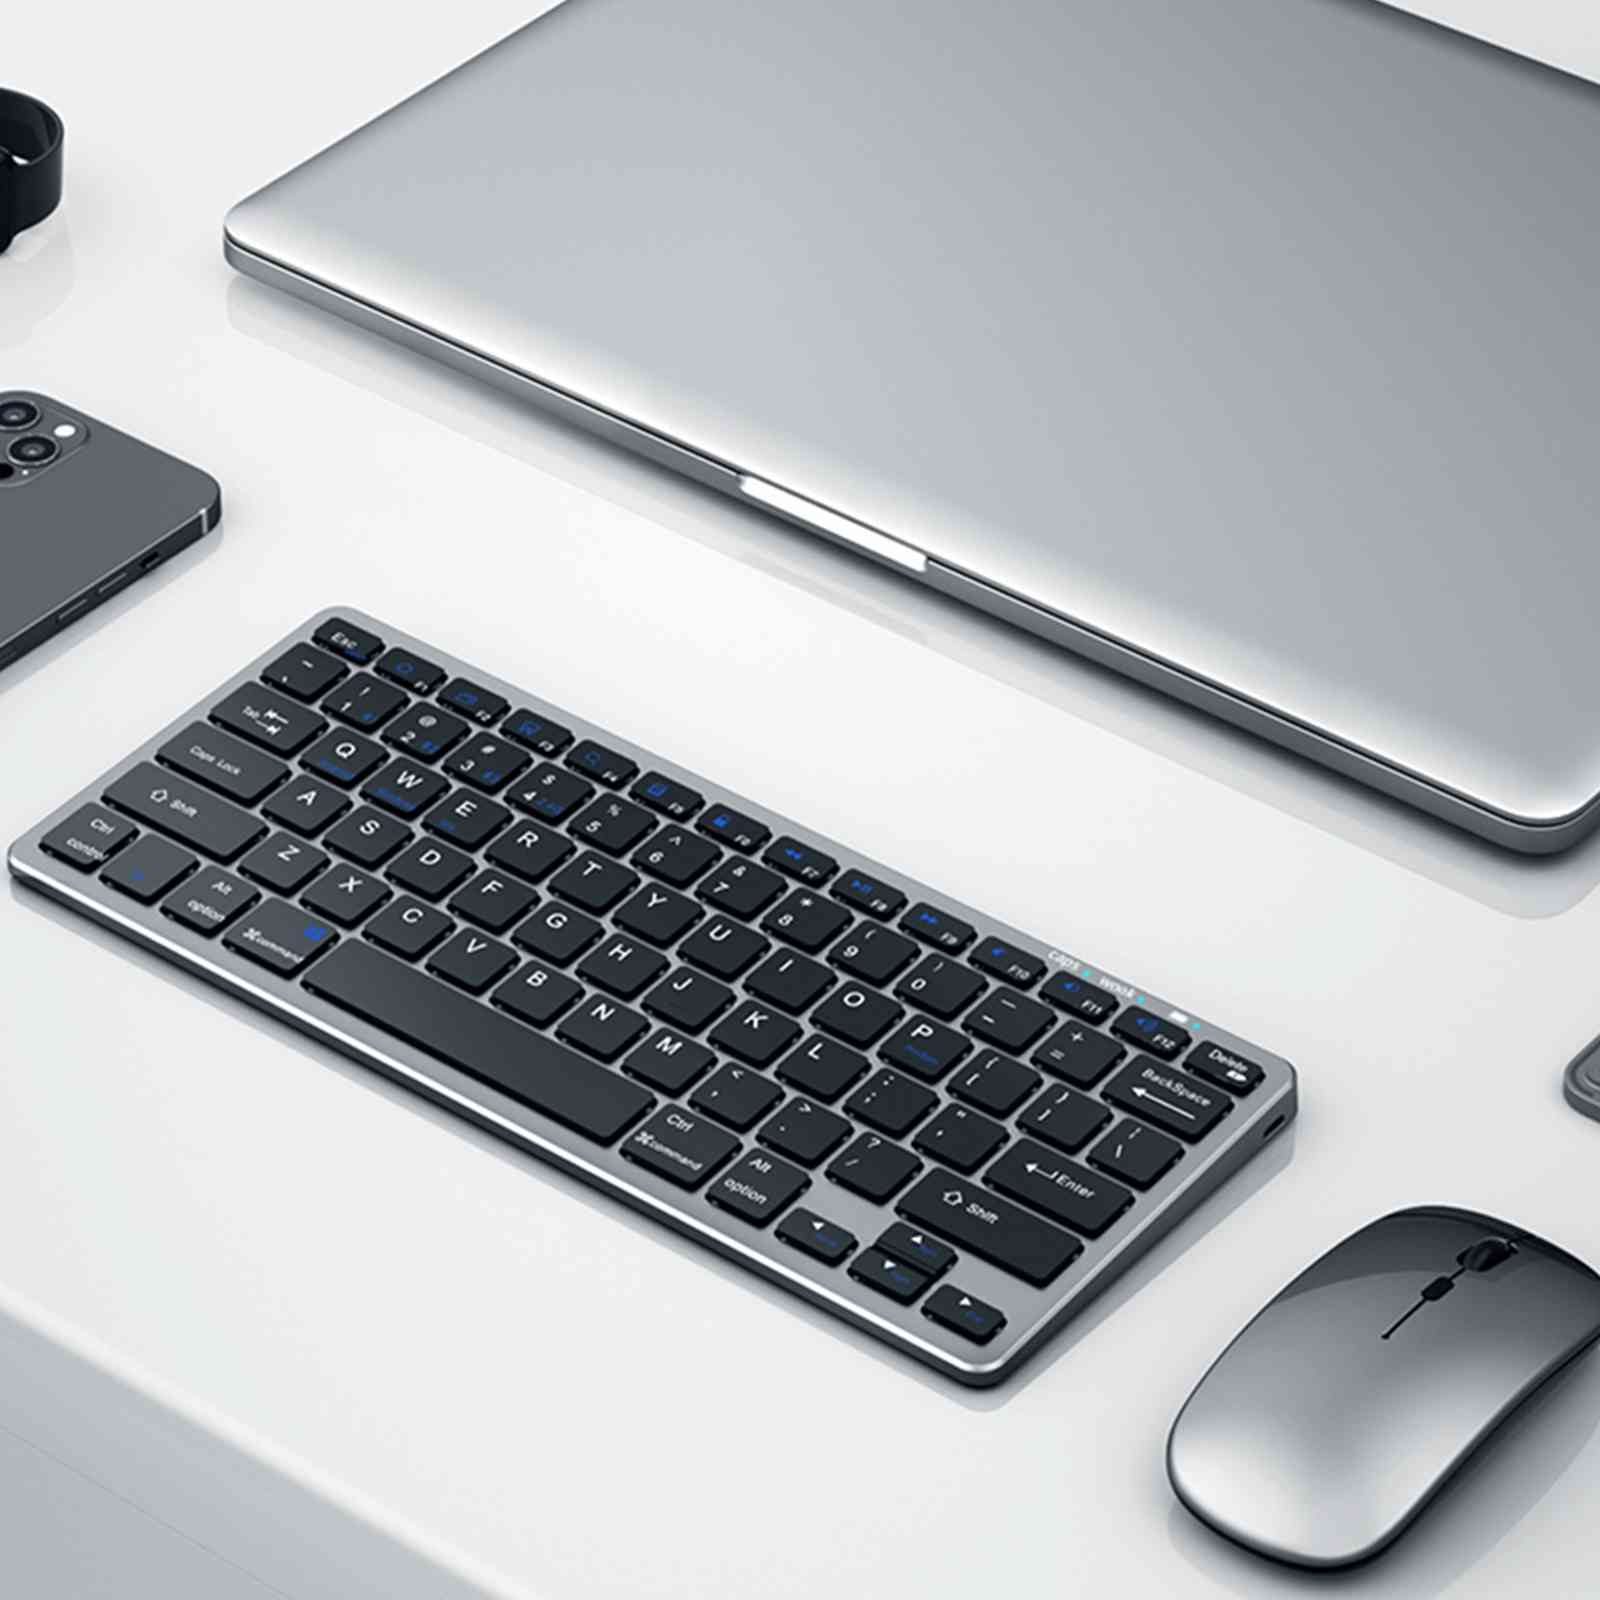 Coteetci Wireless Mouse Keyboard Set